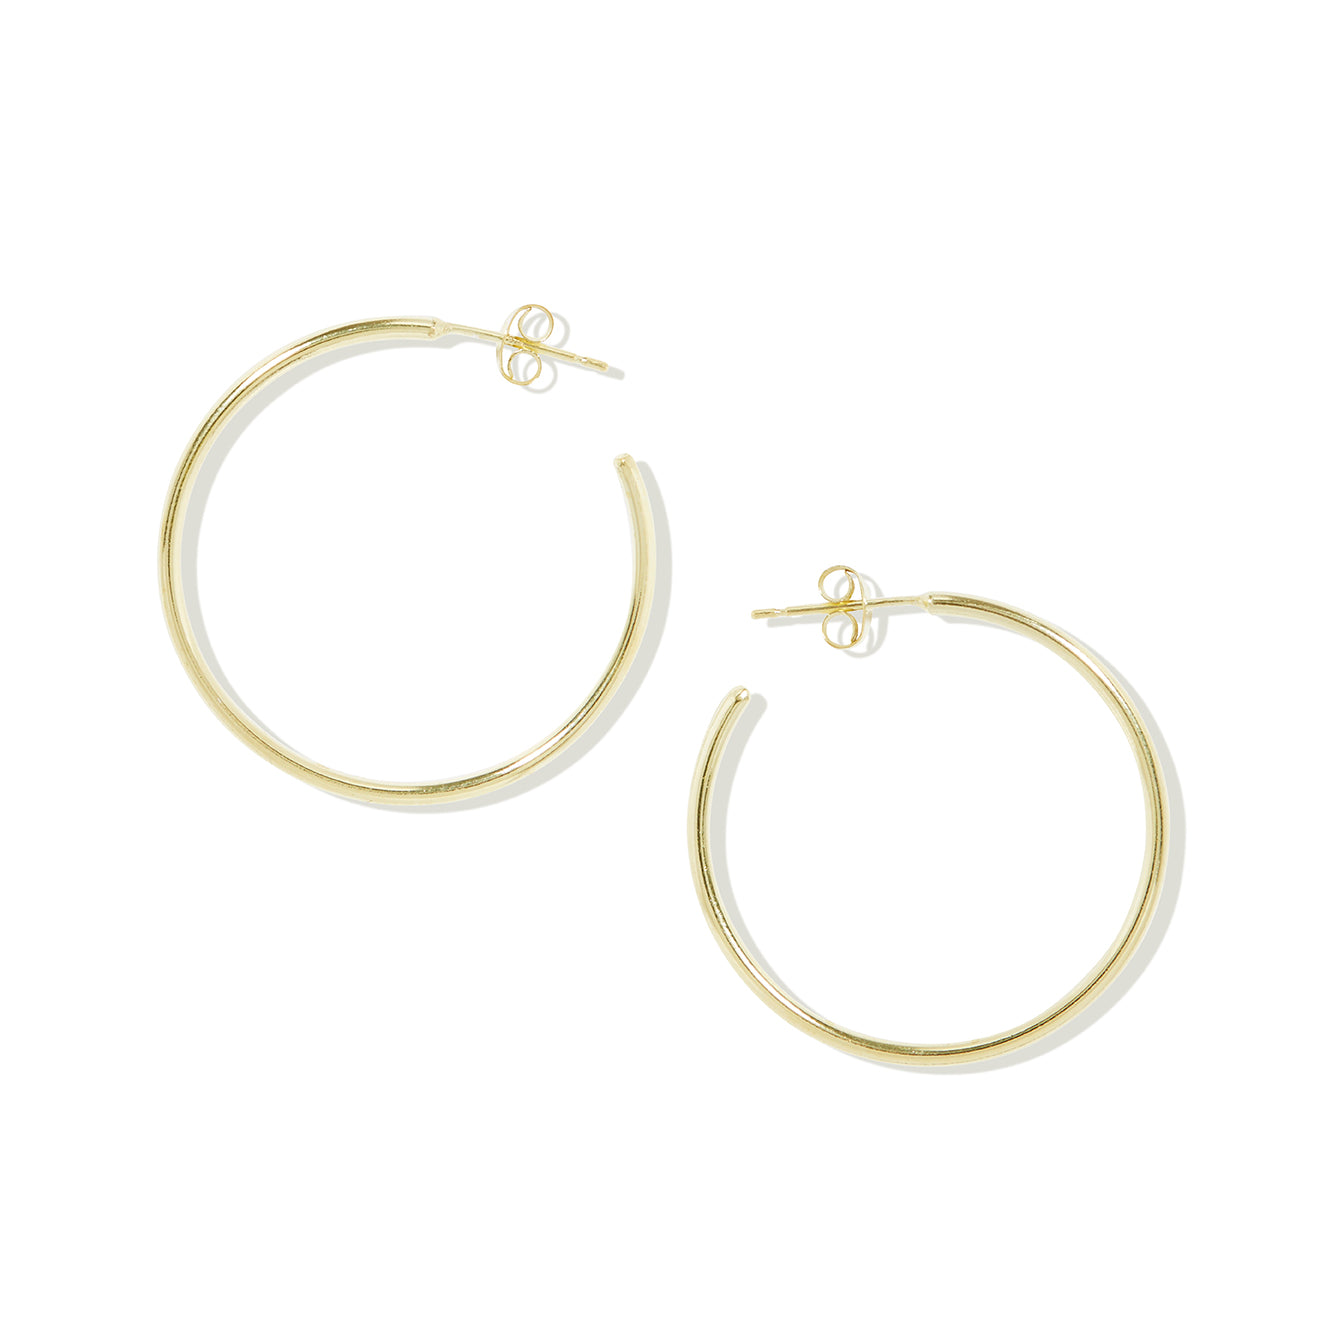 Buy Radley Heart Pearl 18ct Rose Gold Earrings | Womens earrings | Argos